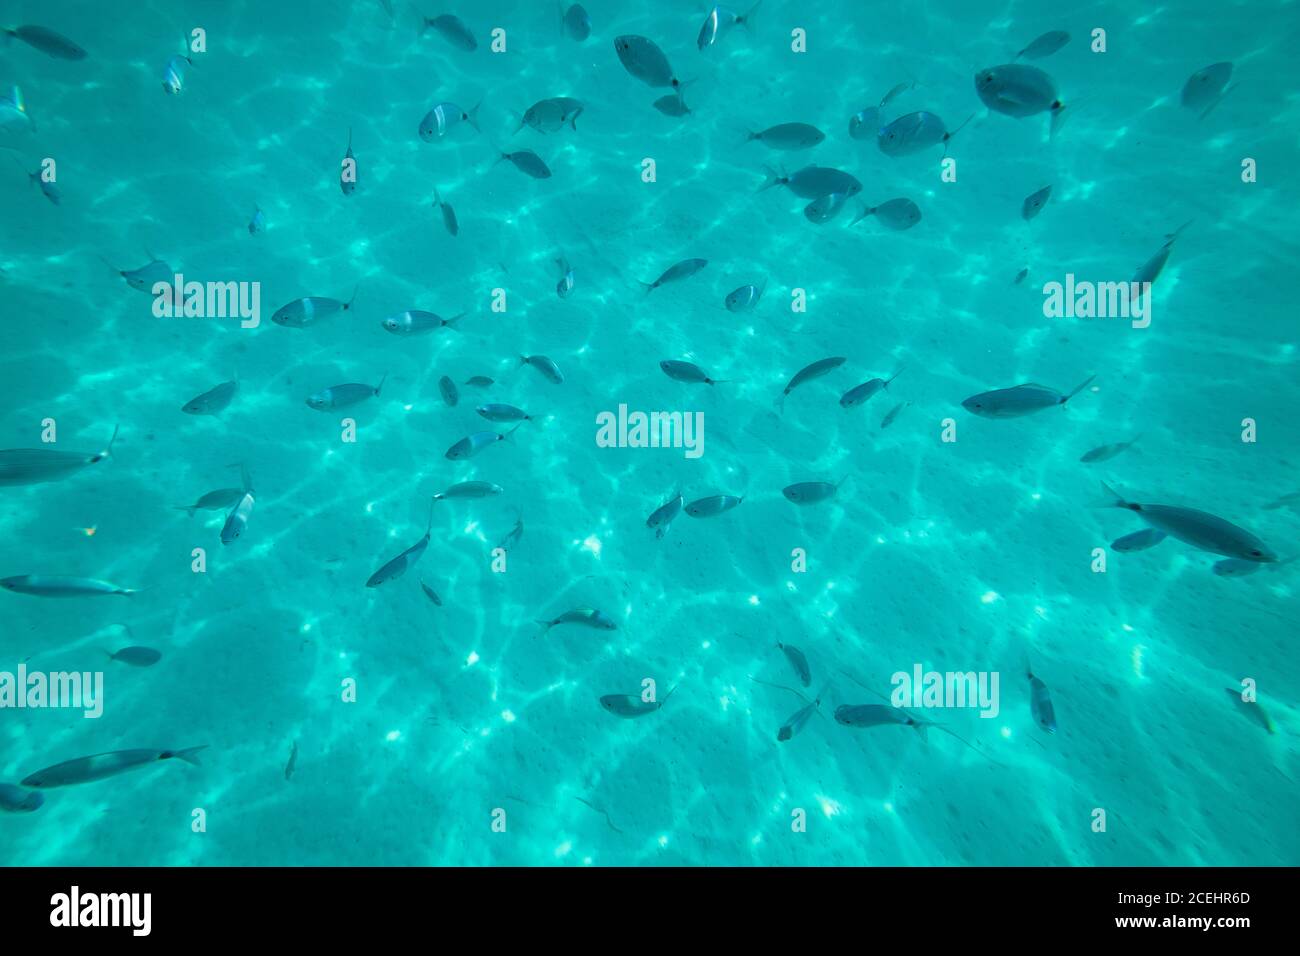 Dall'alto si può ammirare il bellissimo mare azzurro con molti piccoli pesci Foto Stock